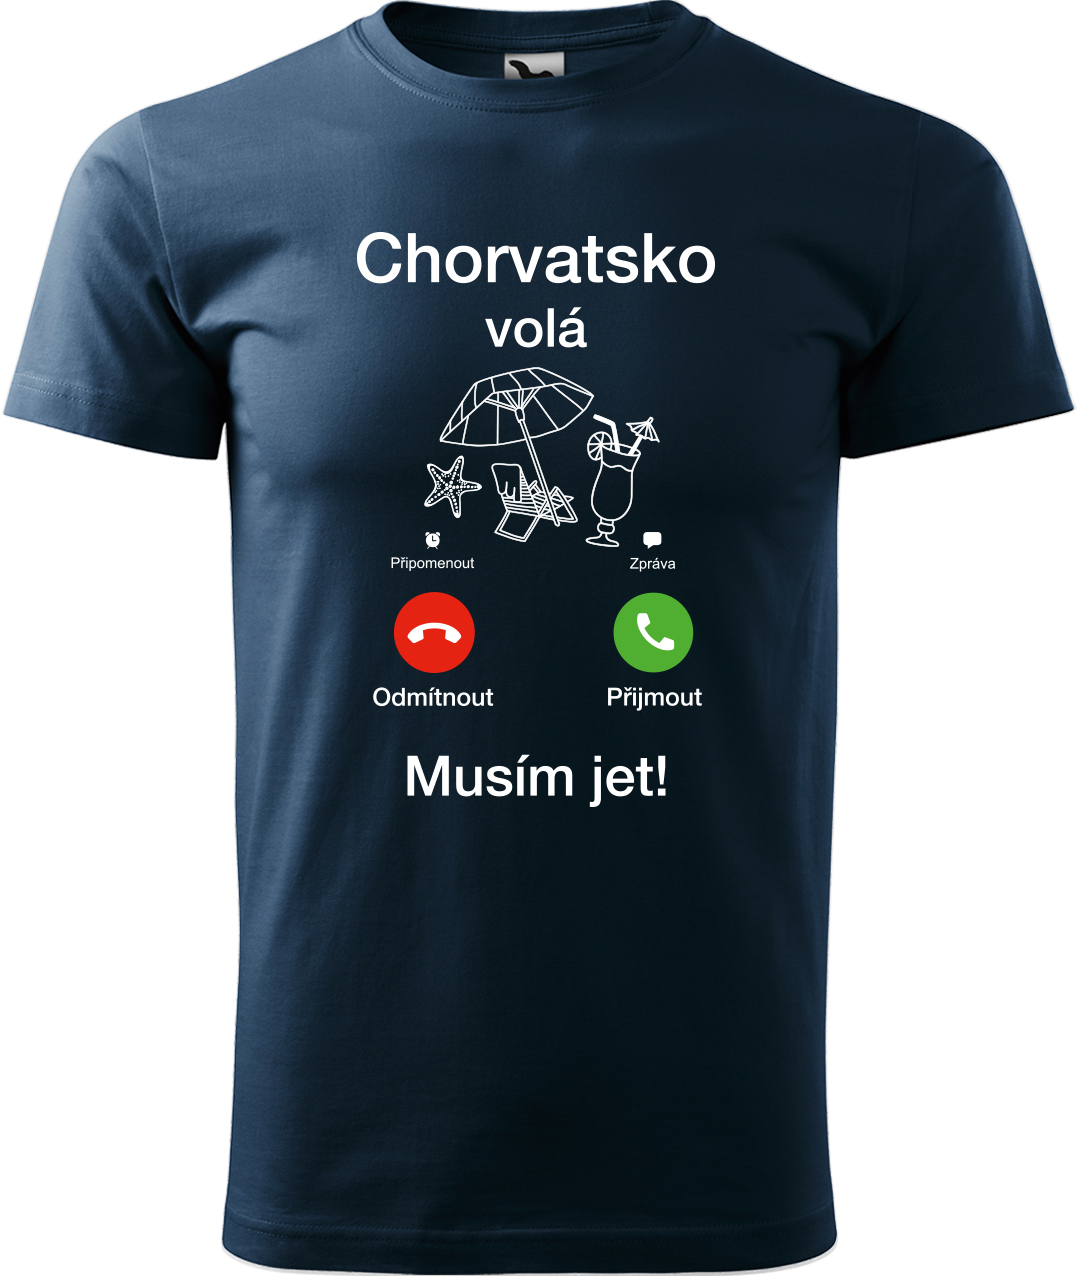 Pánské cestovatelské tričko - Chorvatsko volá - musím jet! Velikost: 4XL, Barva: Námořní modrá (02), Střih: pánský